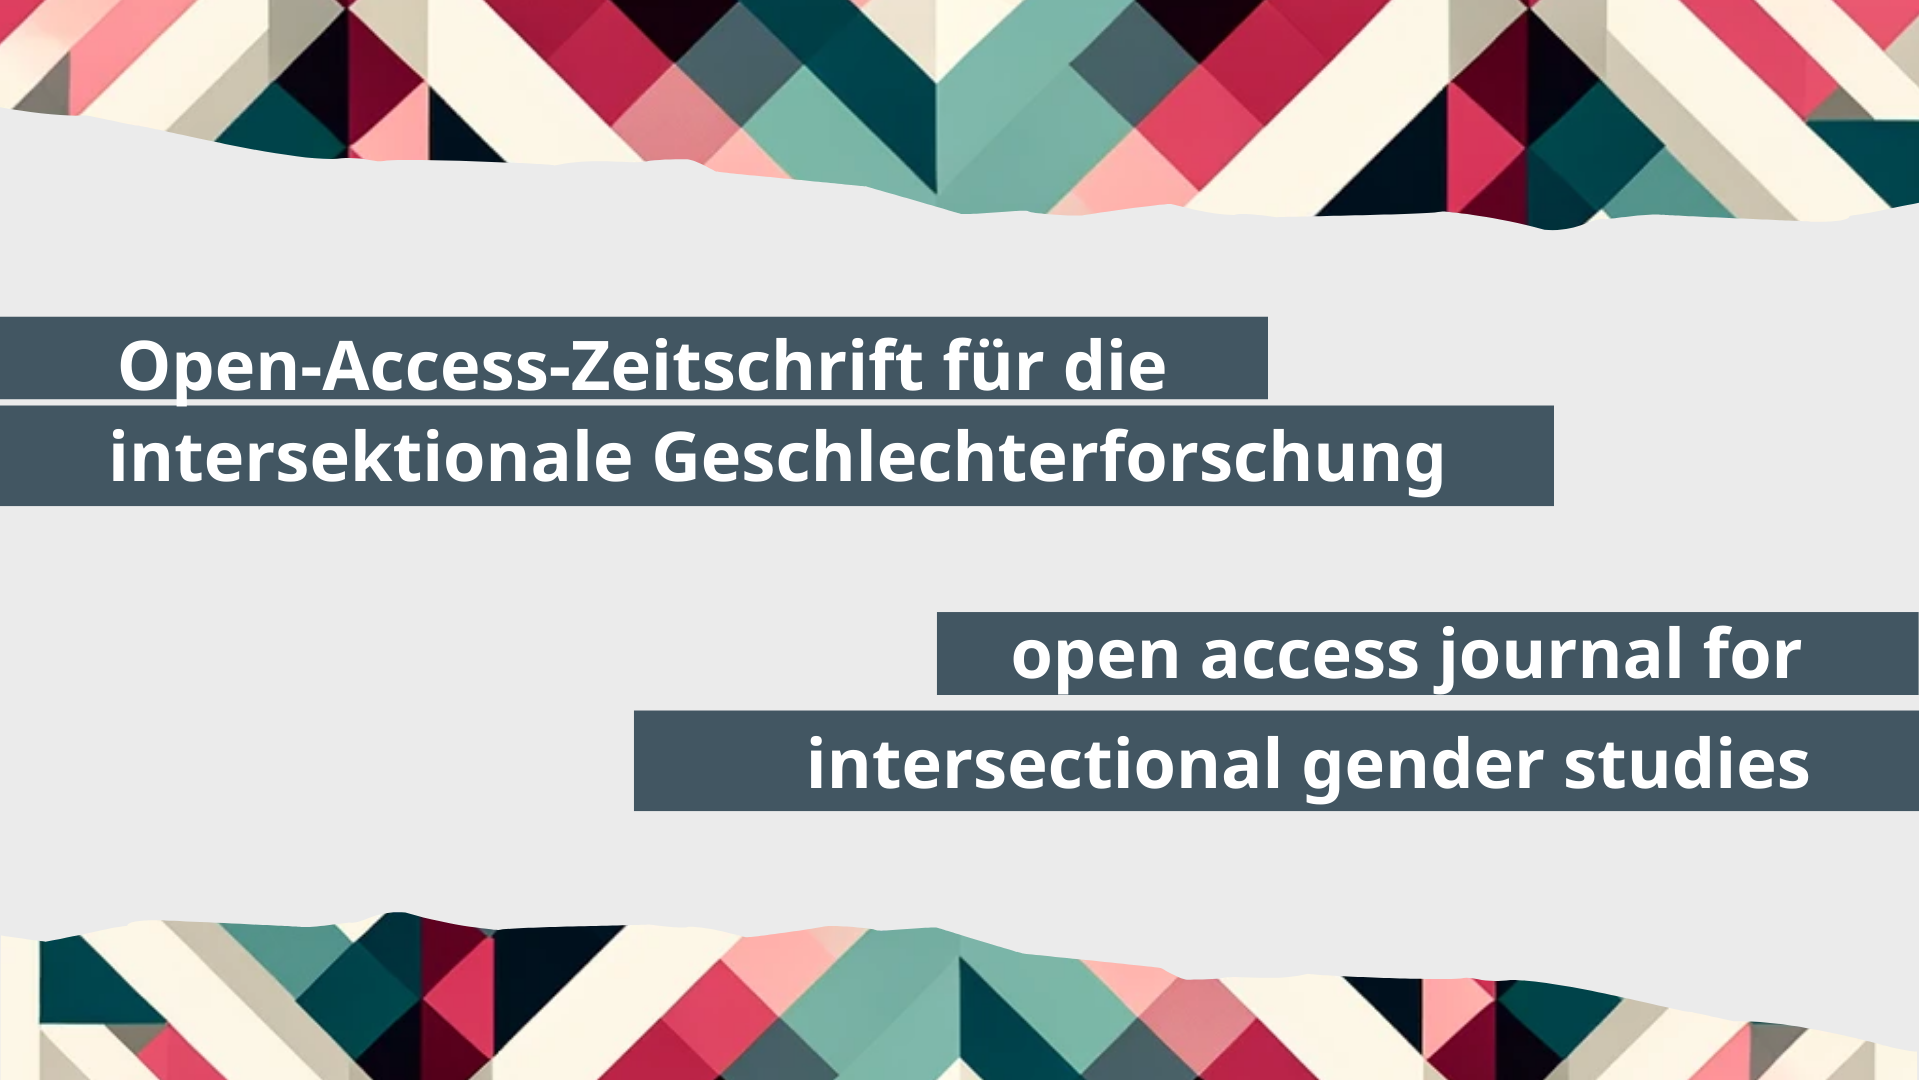 Open-Access-Zeitschrift für die intersektionale Geschlechterforschung